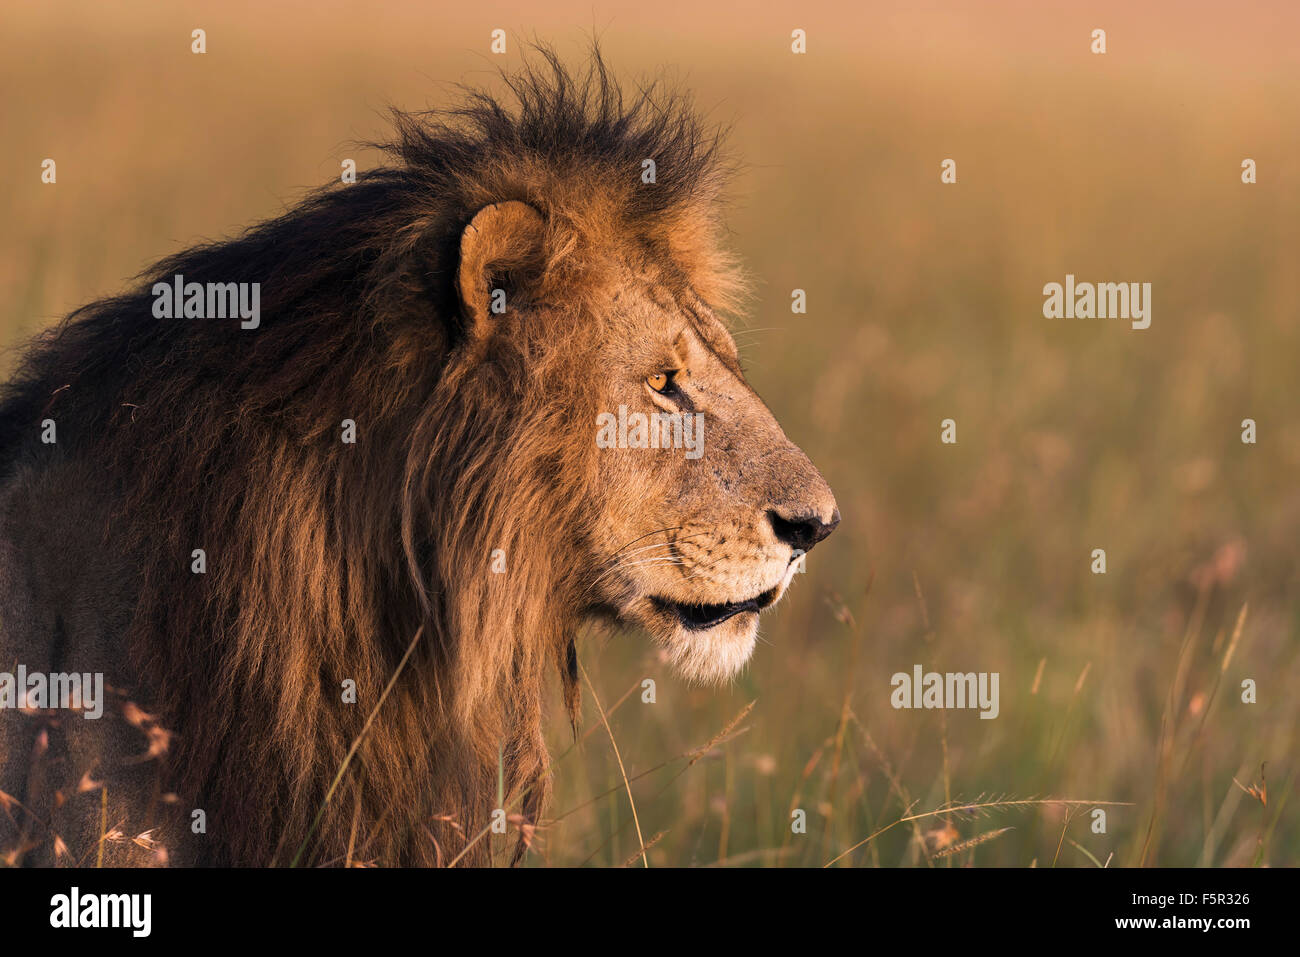 Male lion (Panthera leo), portrait, morning light, Masai Mara, Narok County, Kenya Stock Photo